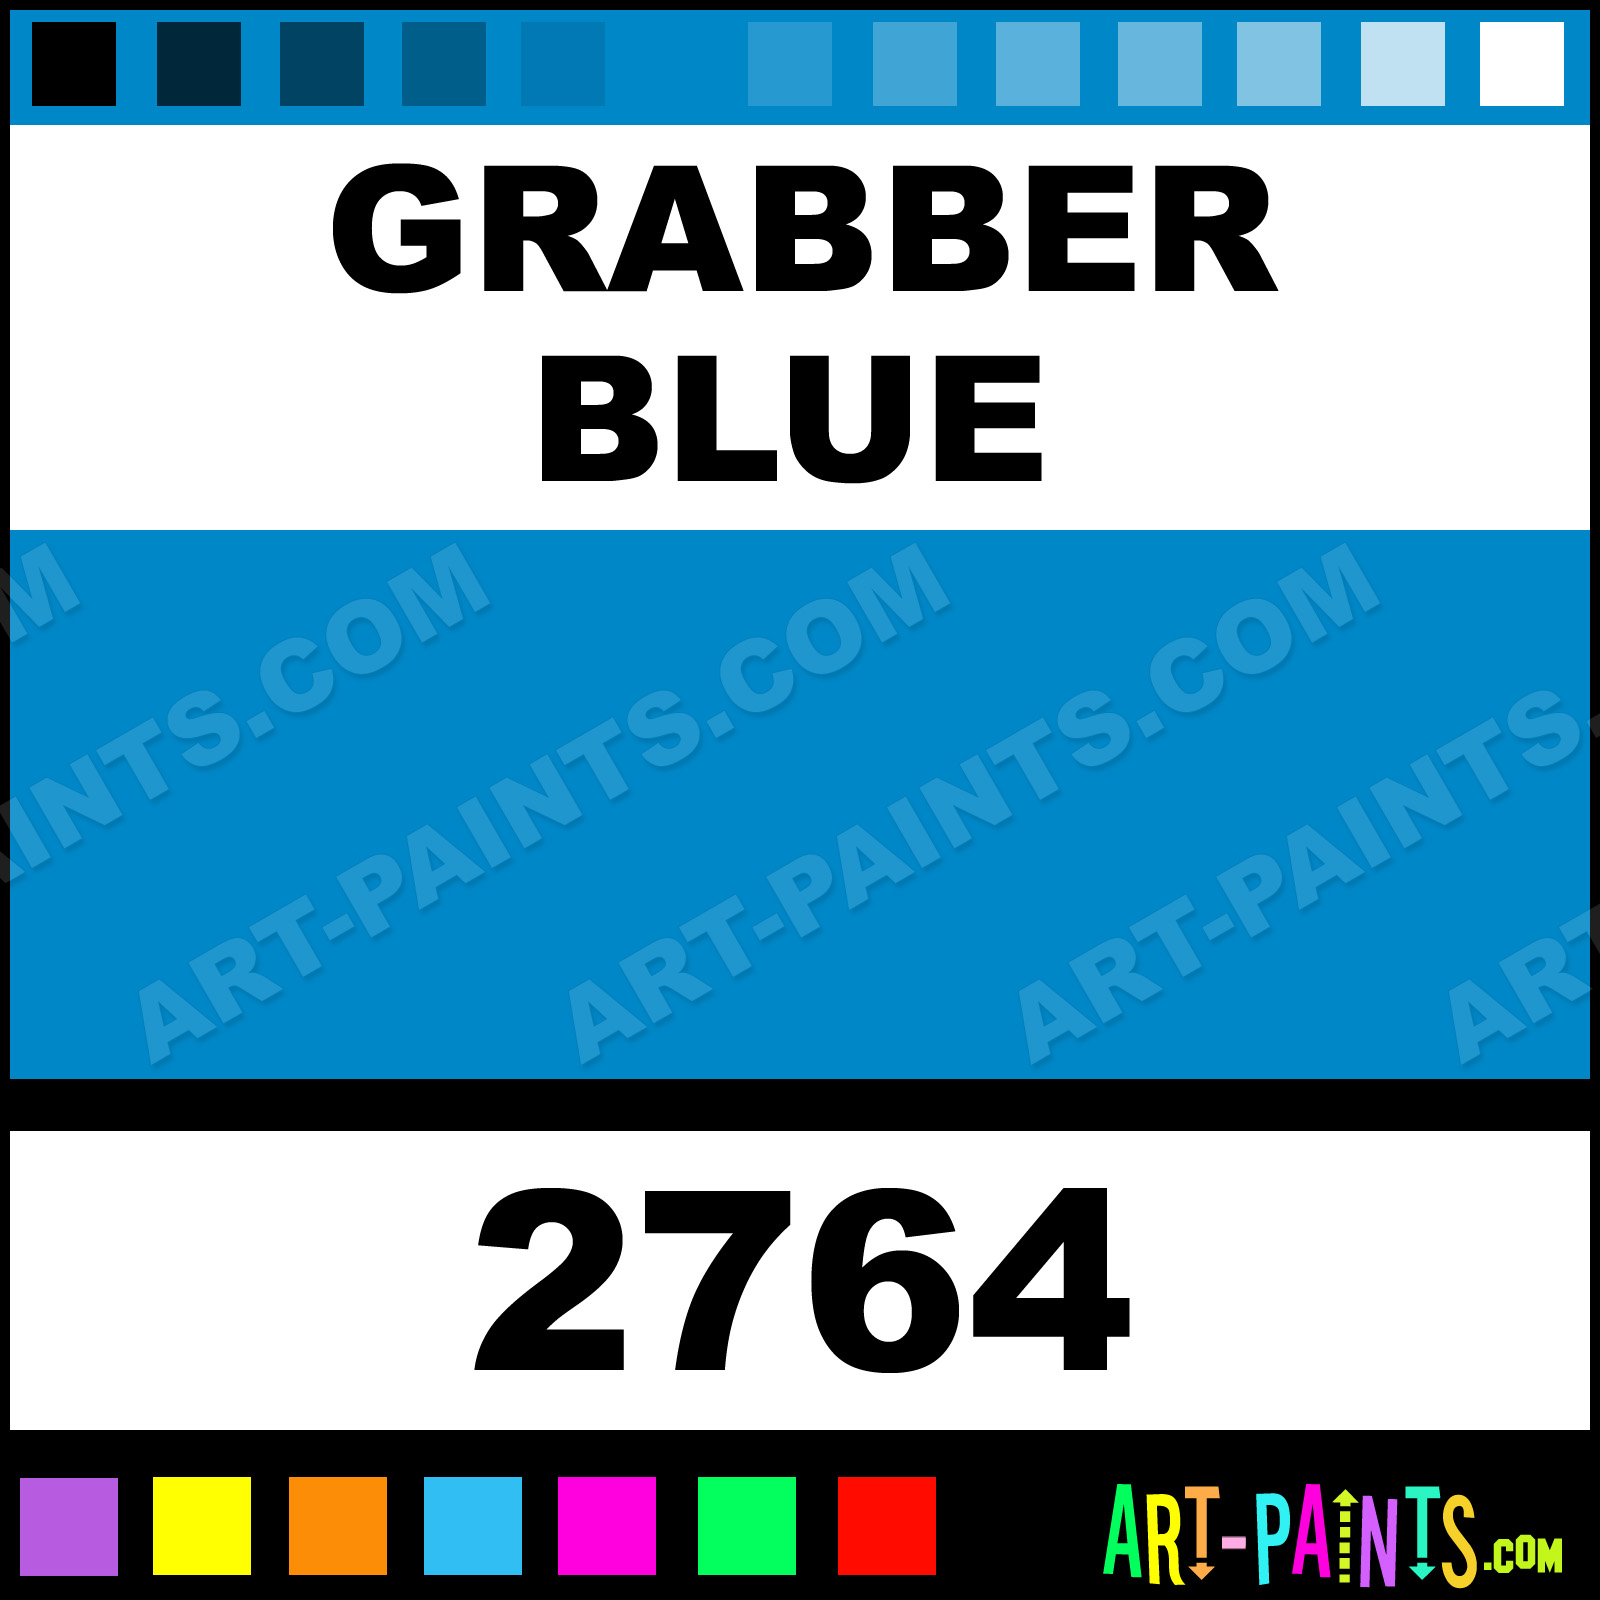 Grabber-Blue-xlg.jpg